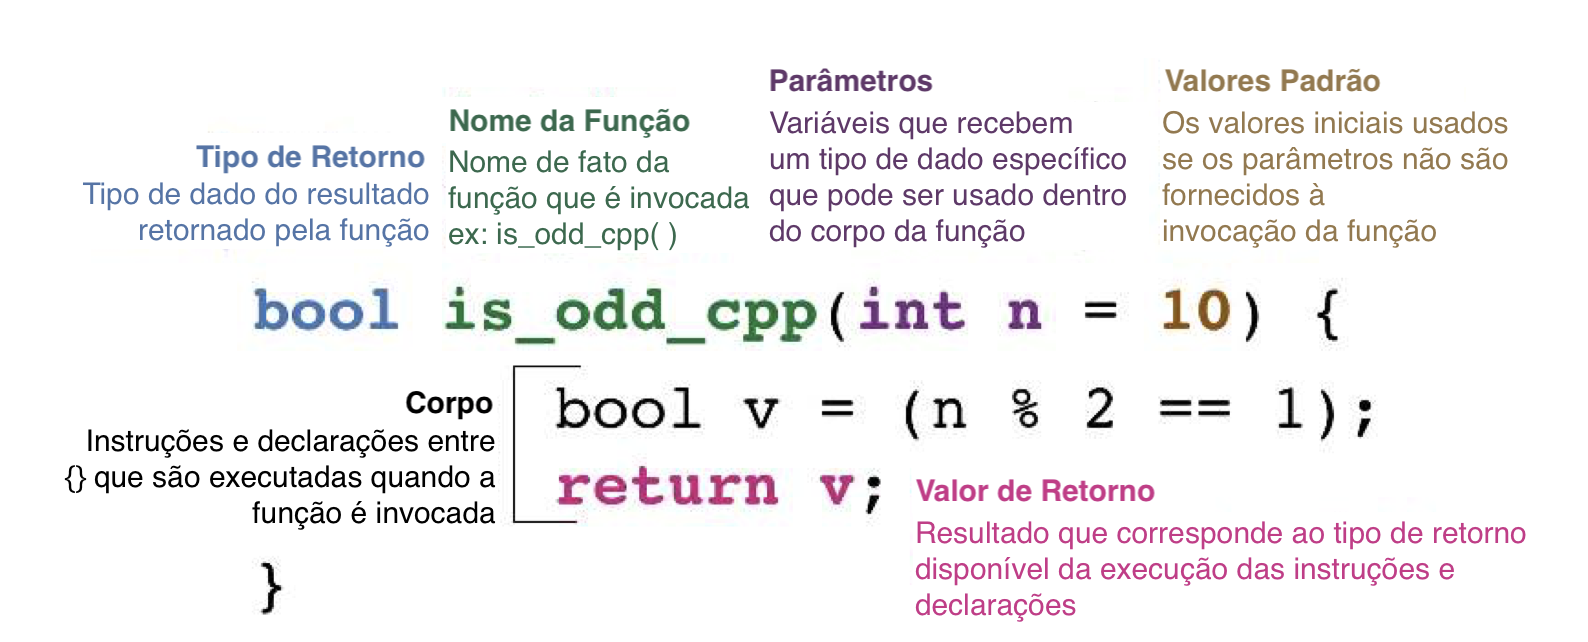 Anatomia de uma função em C++. Figura adaptada da Vinheta Oficial Introdutória do `{Rcpp}` de Dirk Eddelbuettel